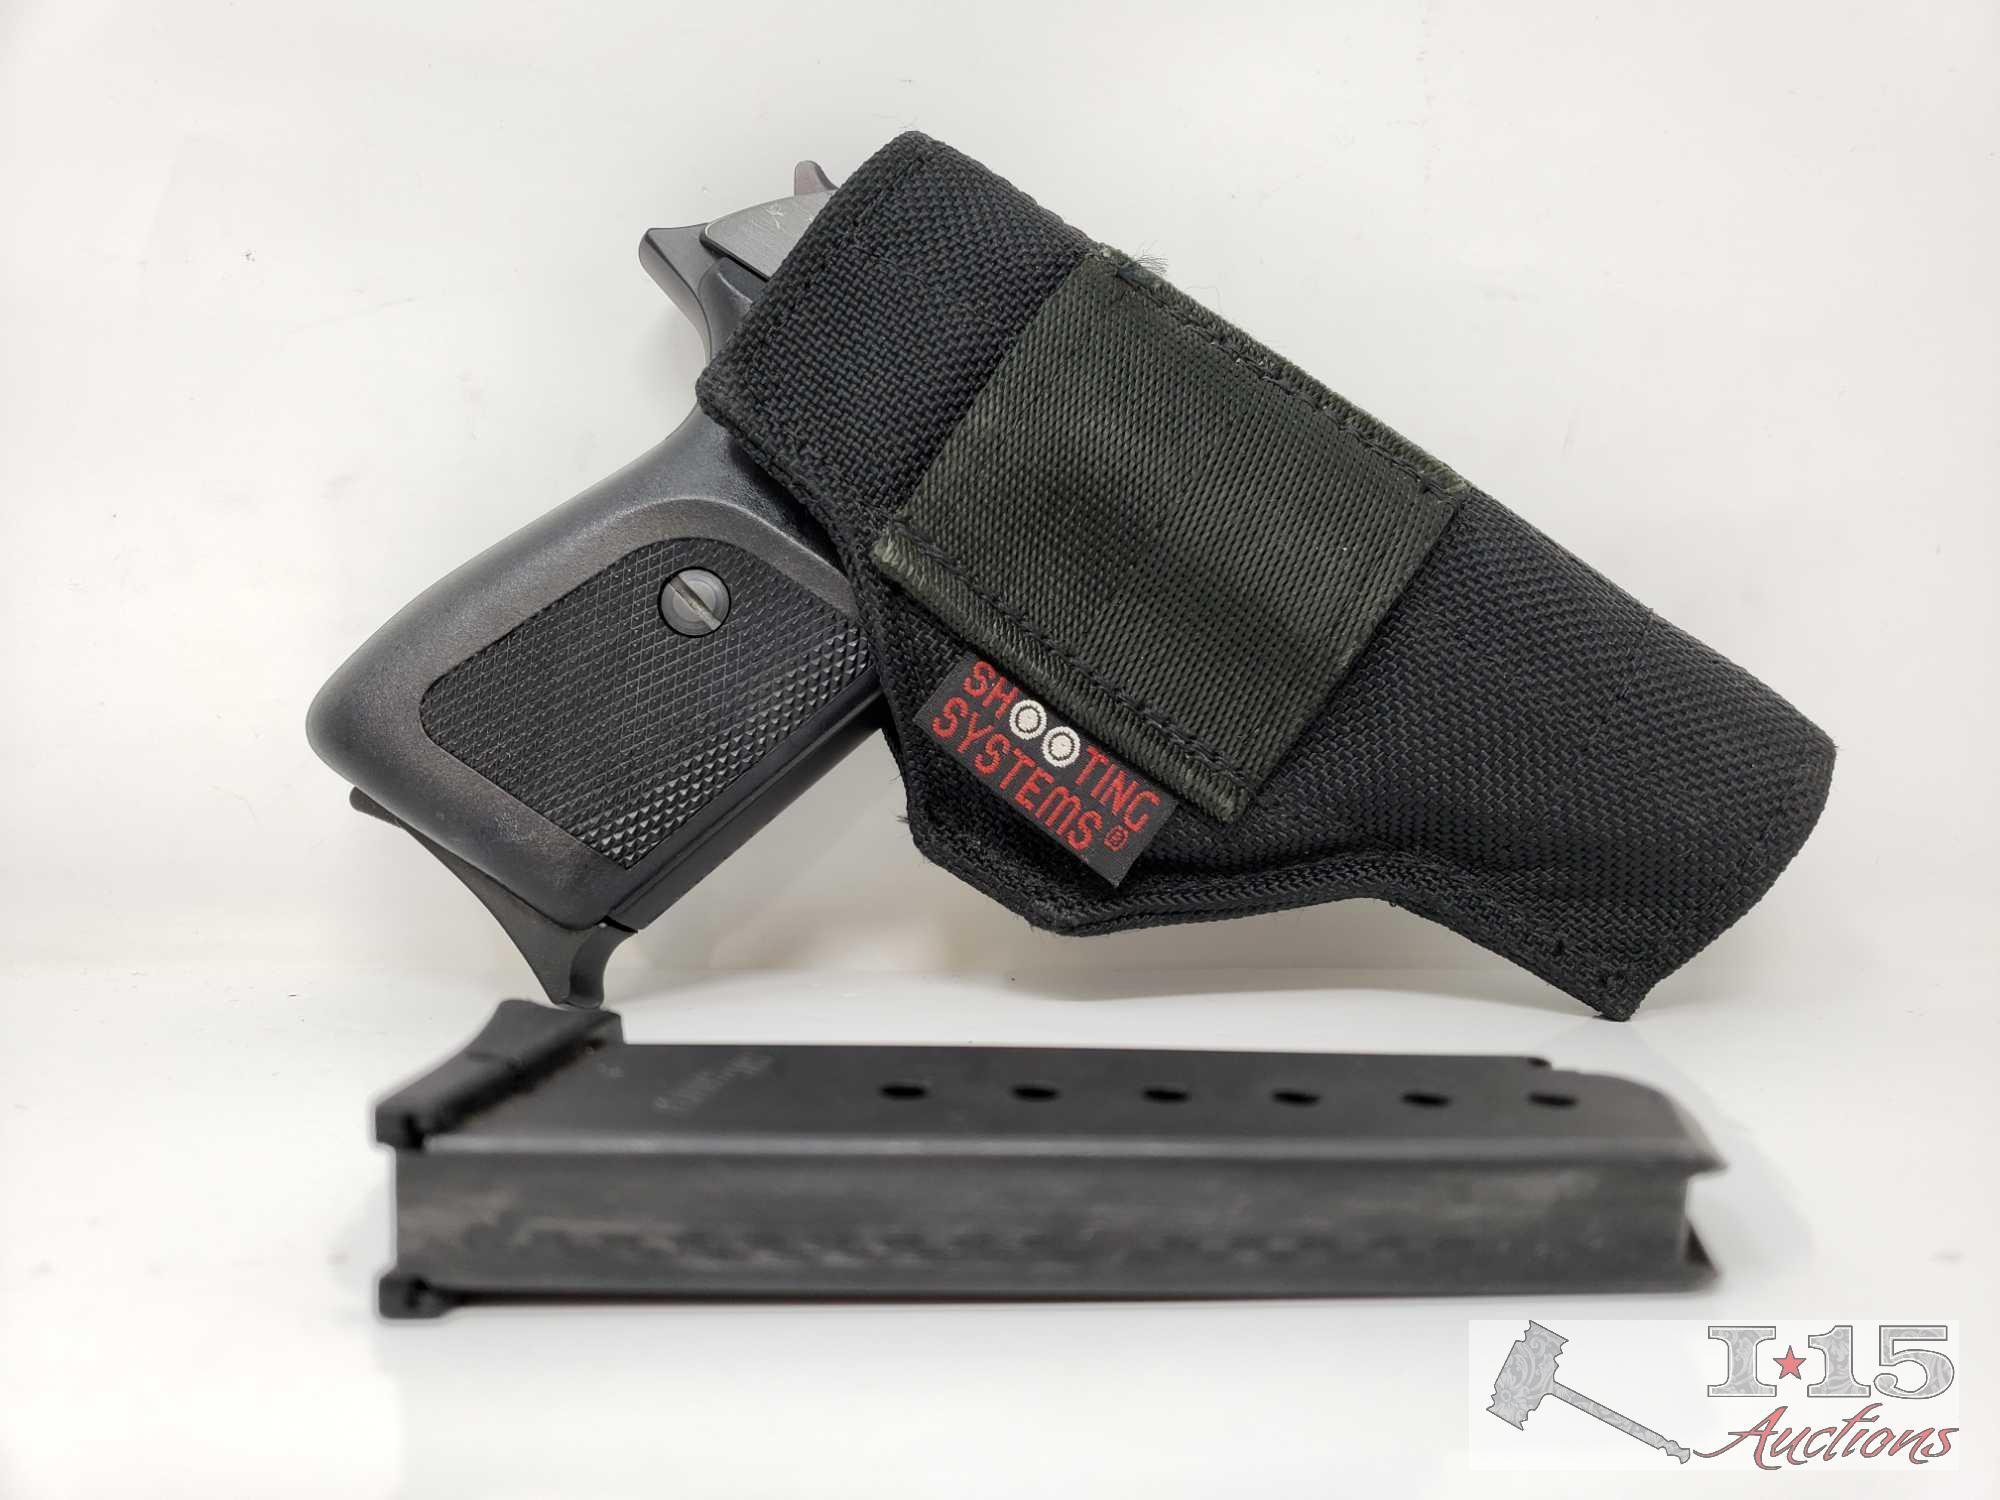 Sig Sauer P230 Semi-Auto 9mm kruz(.380 ACP) Pistol